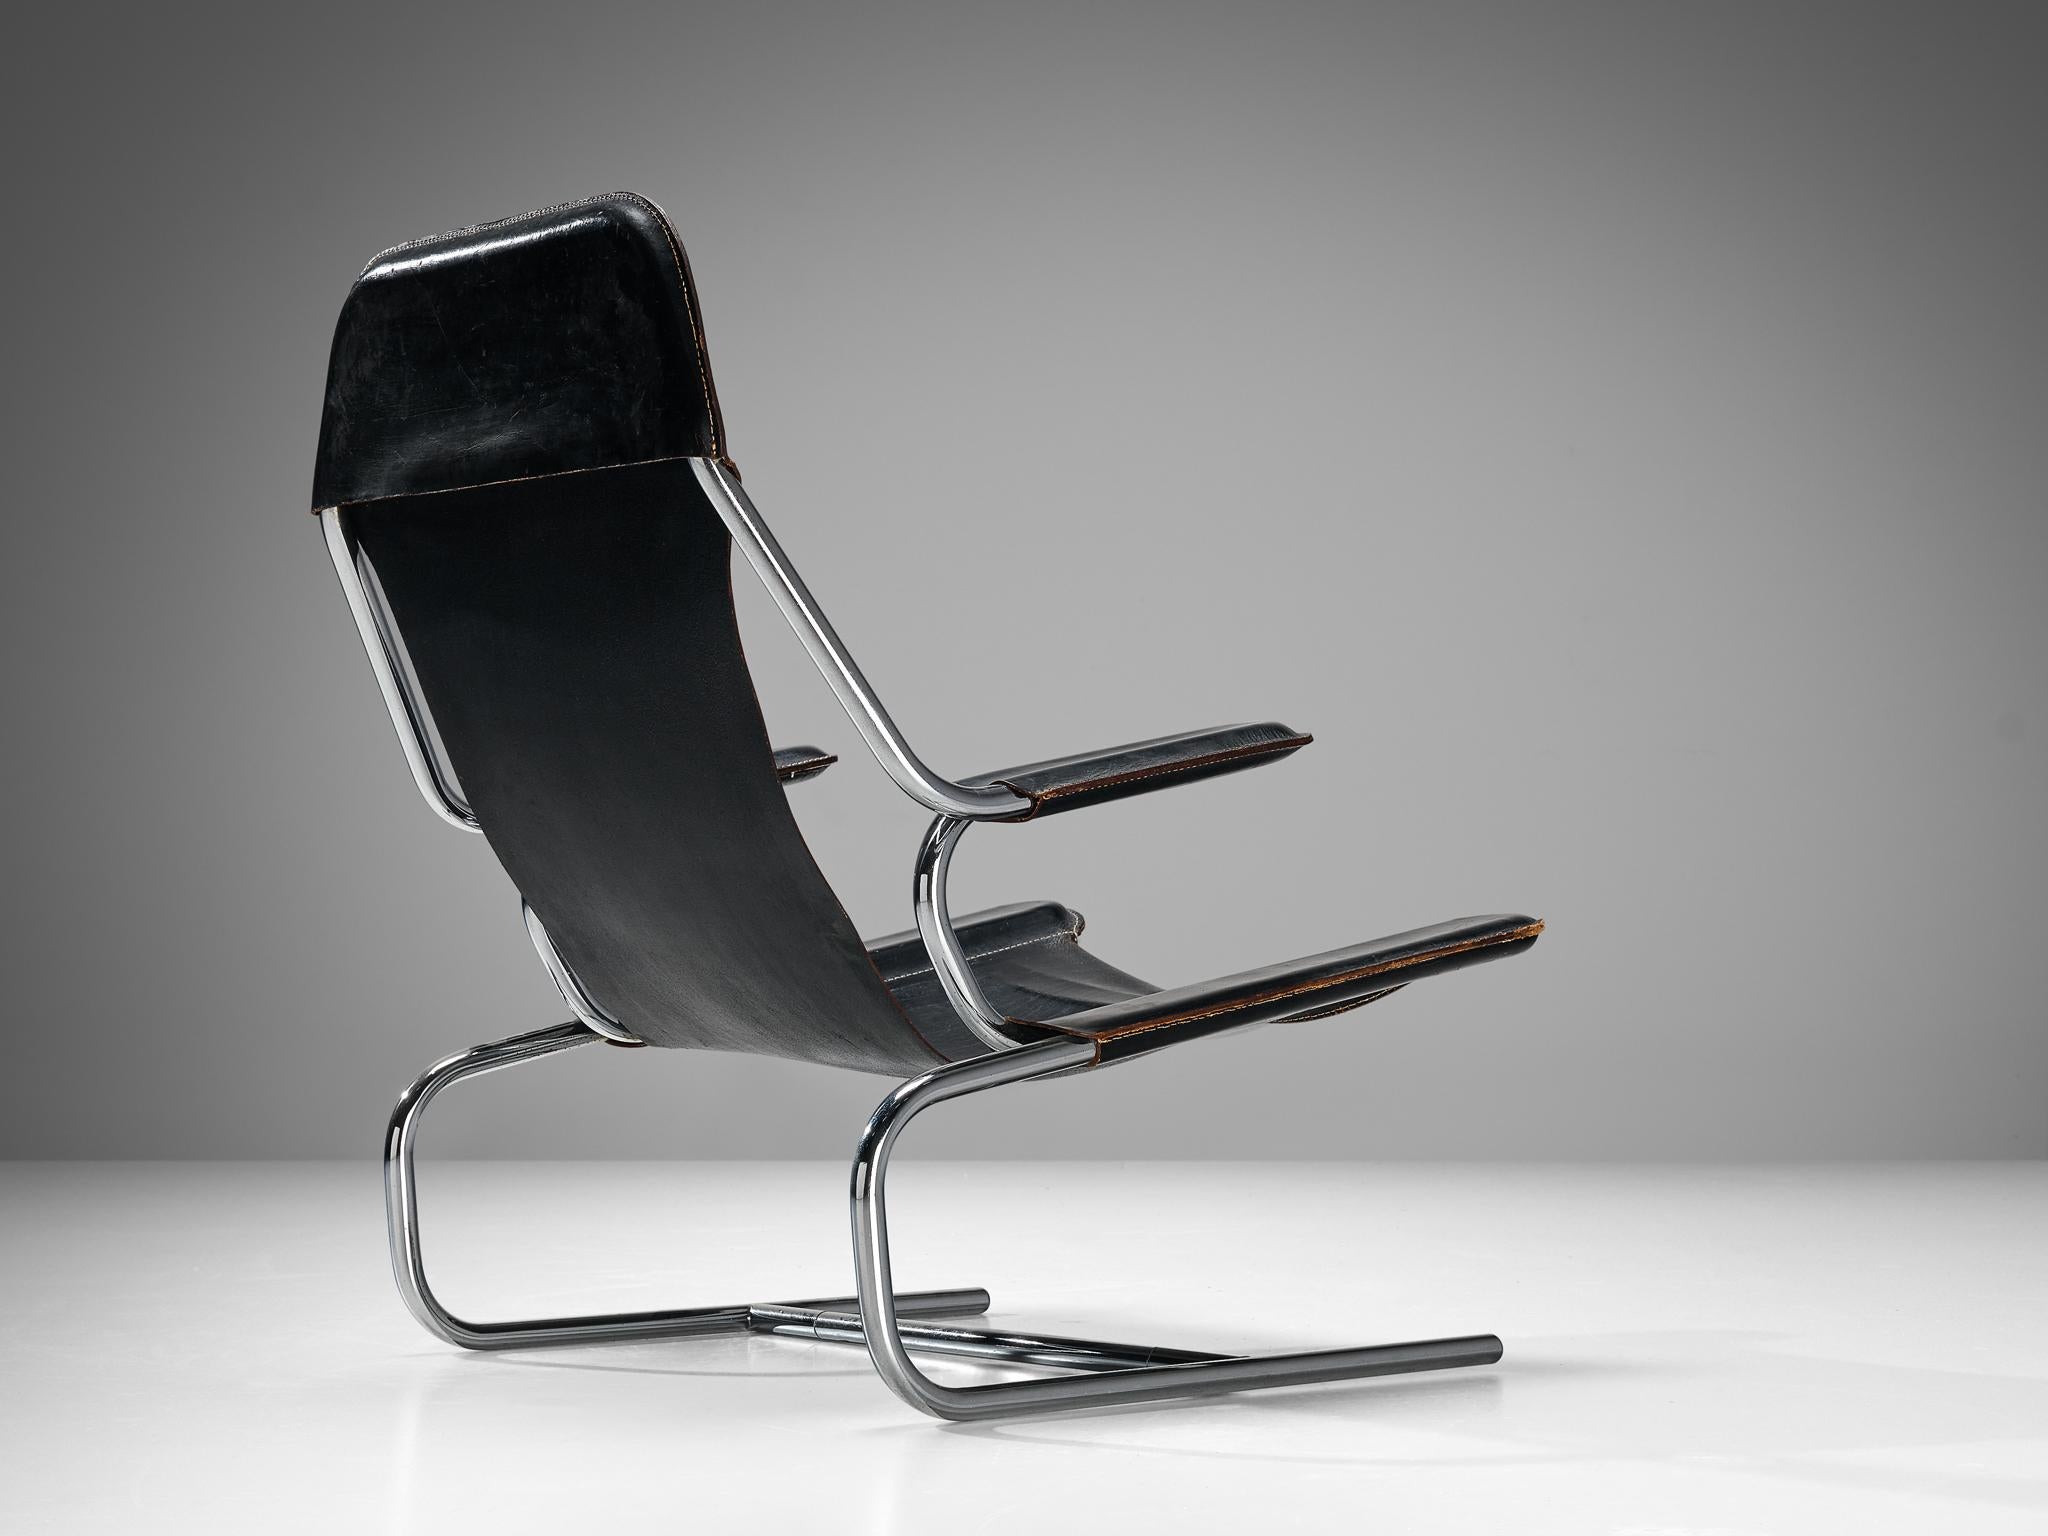 Loungesessel aus Stahl und Leder, Europa, 1950er Jahre.

Moderner Sessel, hergestellt in Europa in den 1950er Jahren. Dieser Stuhl ist aus gebogenem Stahlrohr gefertigt und mit schwarzem Sattelleder gepolstert. Schöne geschwungene Linien verbinden